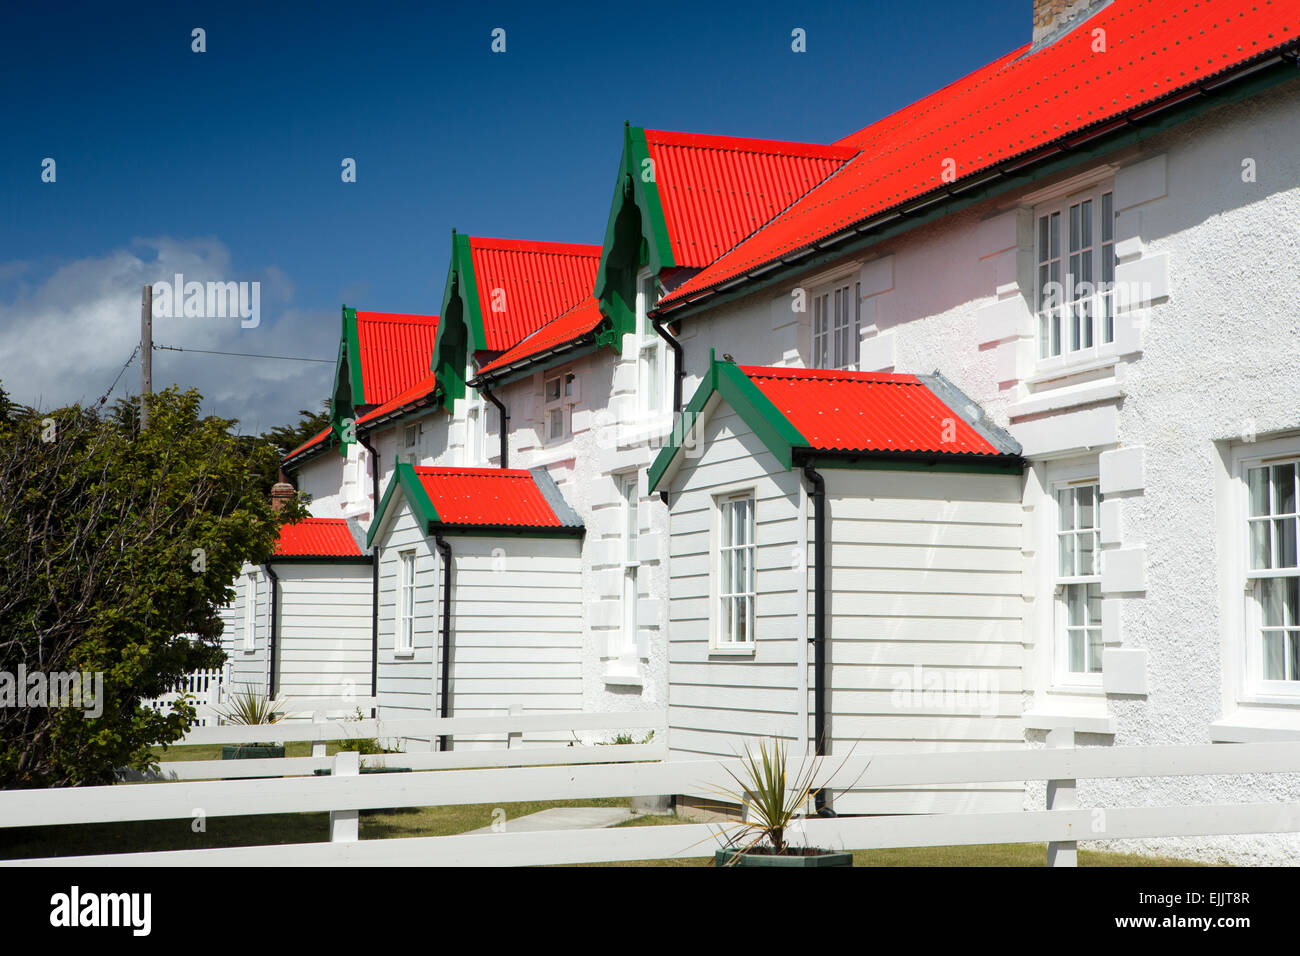 Falkland, Port Stanley, Sieg grün, Marmont Reihe, weiß getünchten Strandpromenade Häuser mit roten Dächern Stockfoto